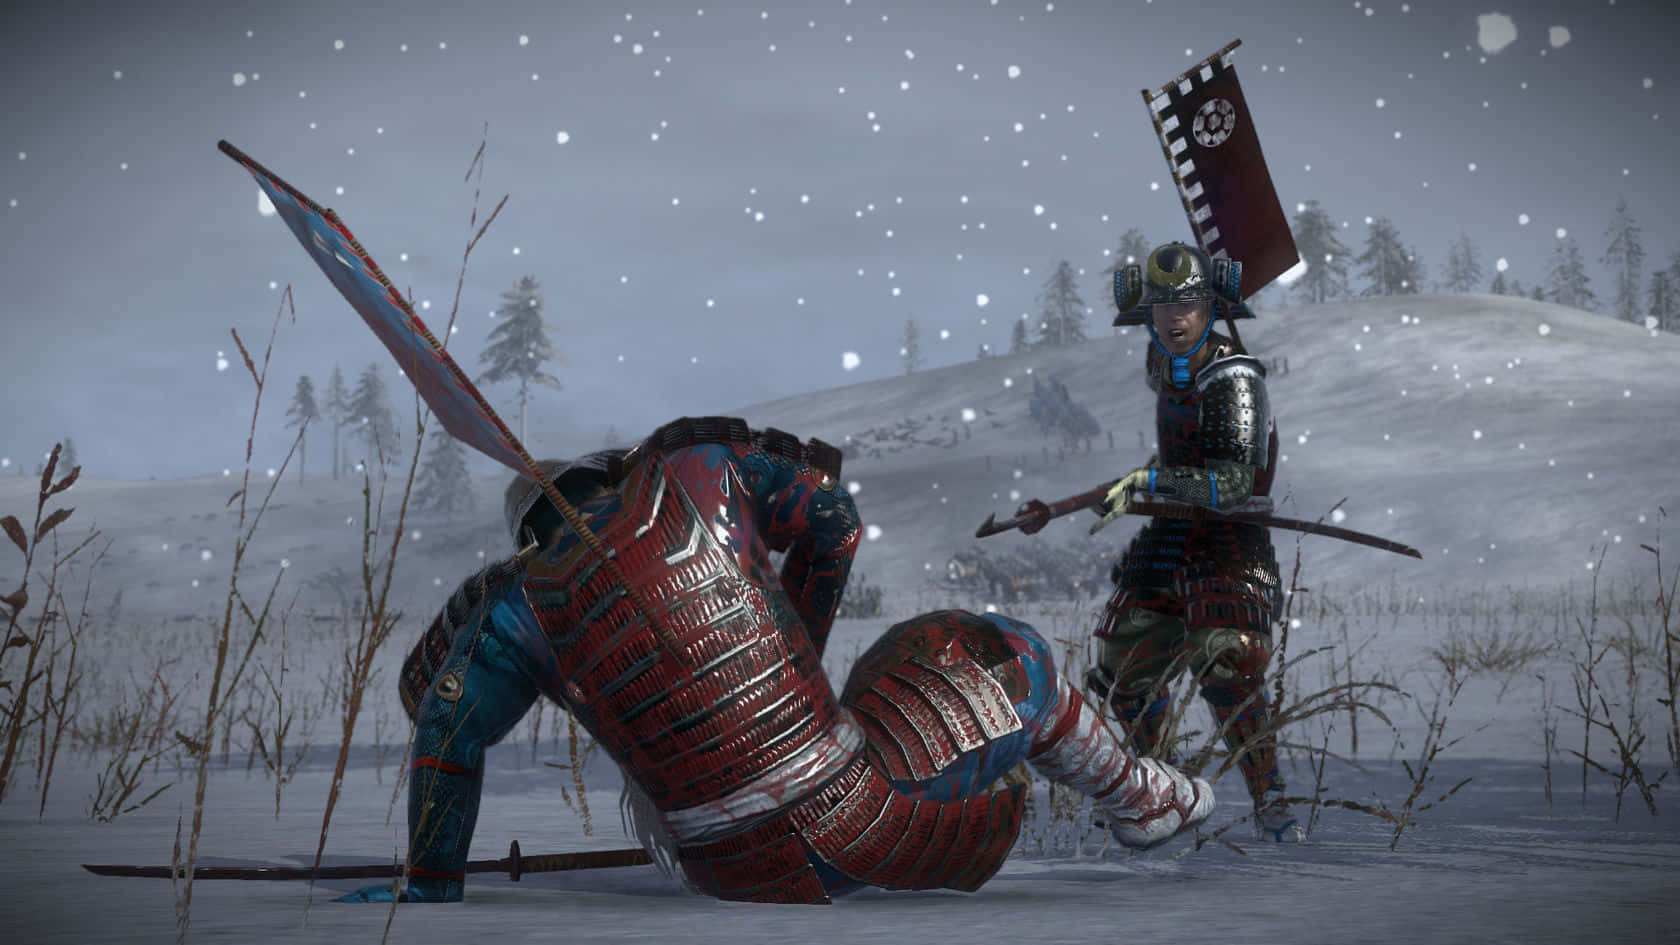 En mand kæmper med et sværd i sneen. Wallpaper